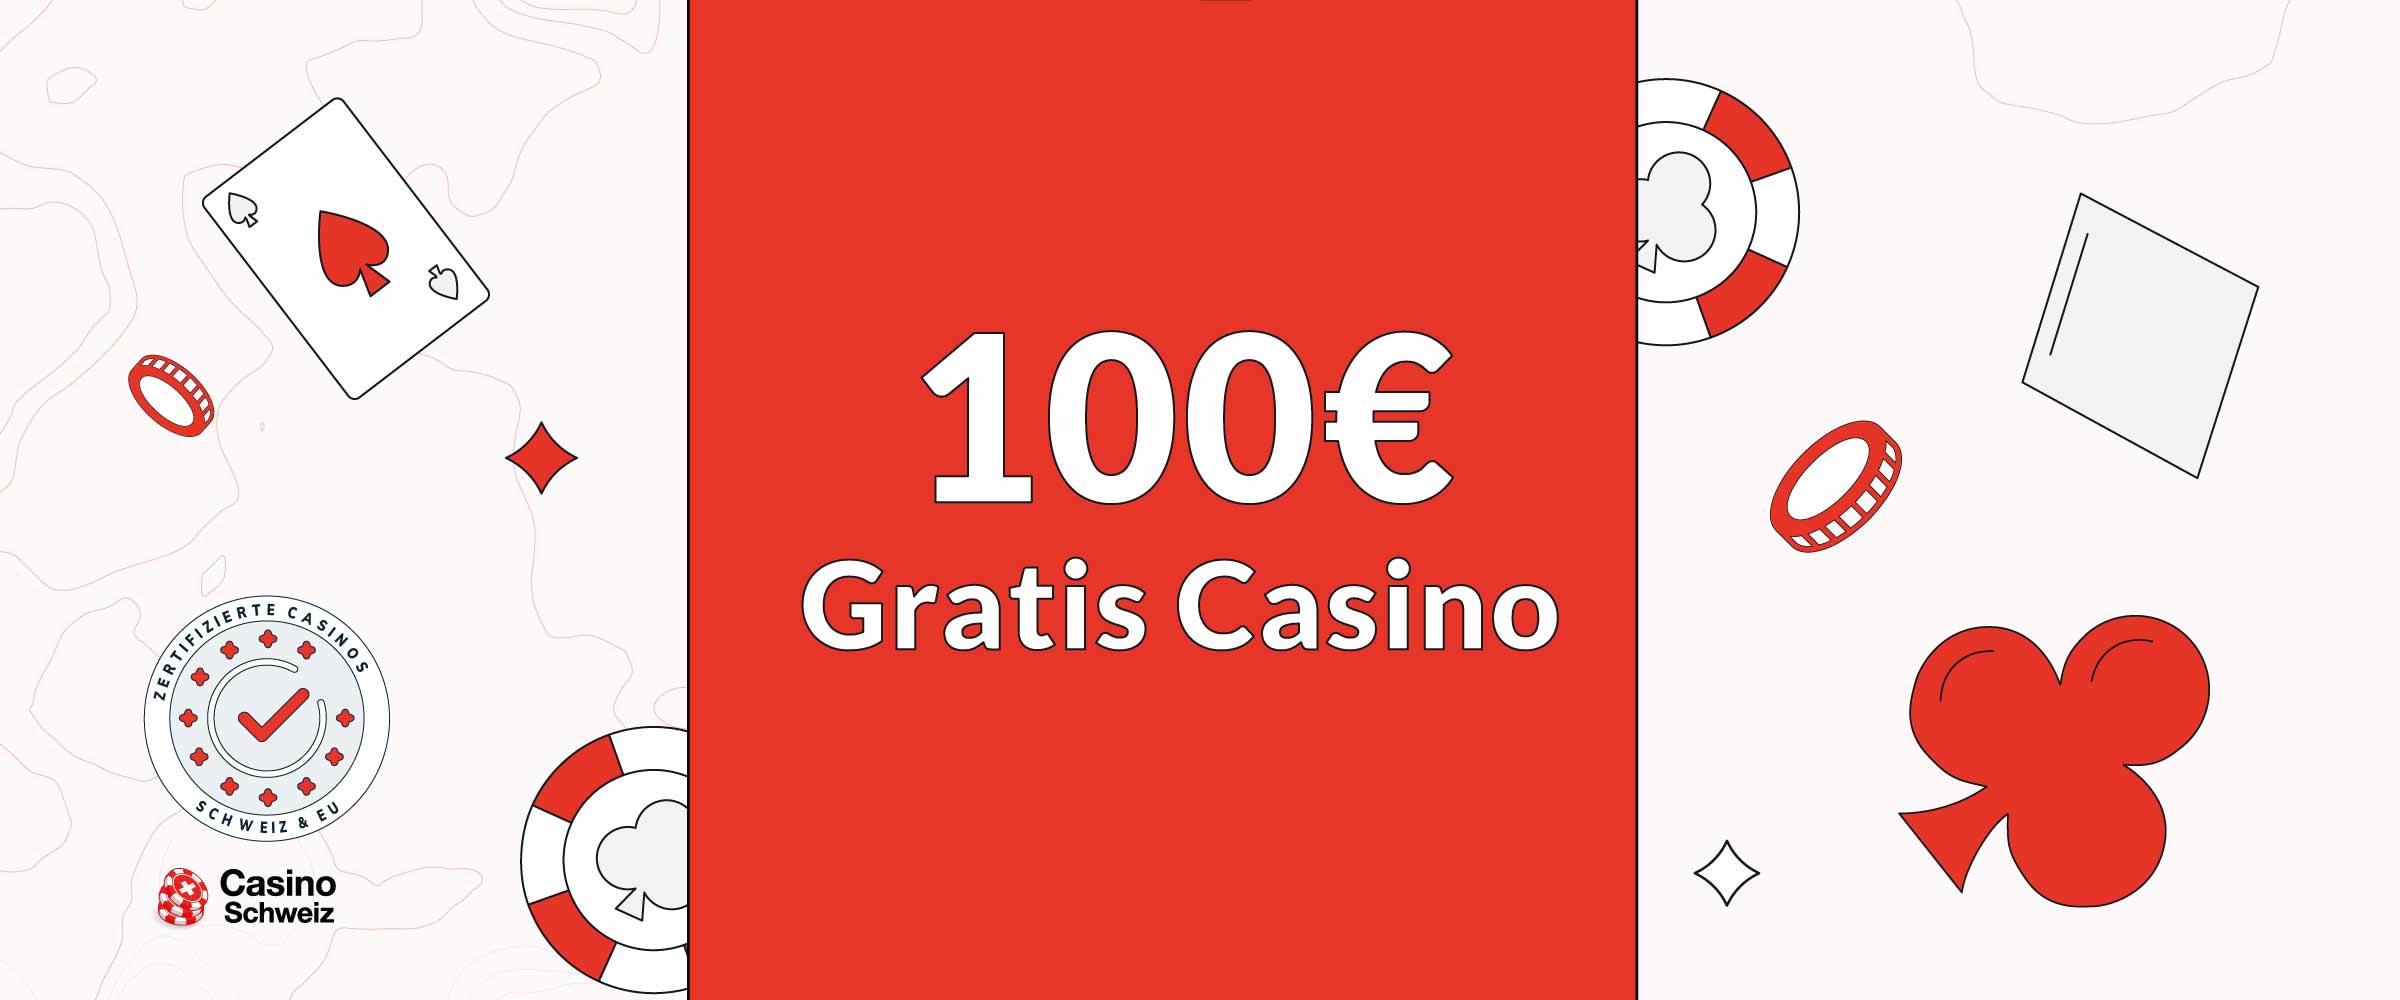 100€ Gratis Casino Bonus